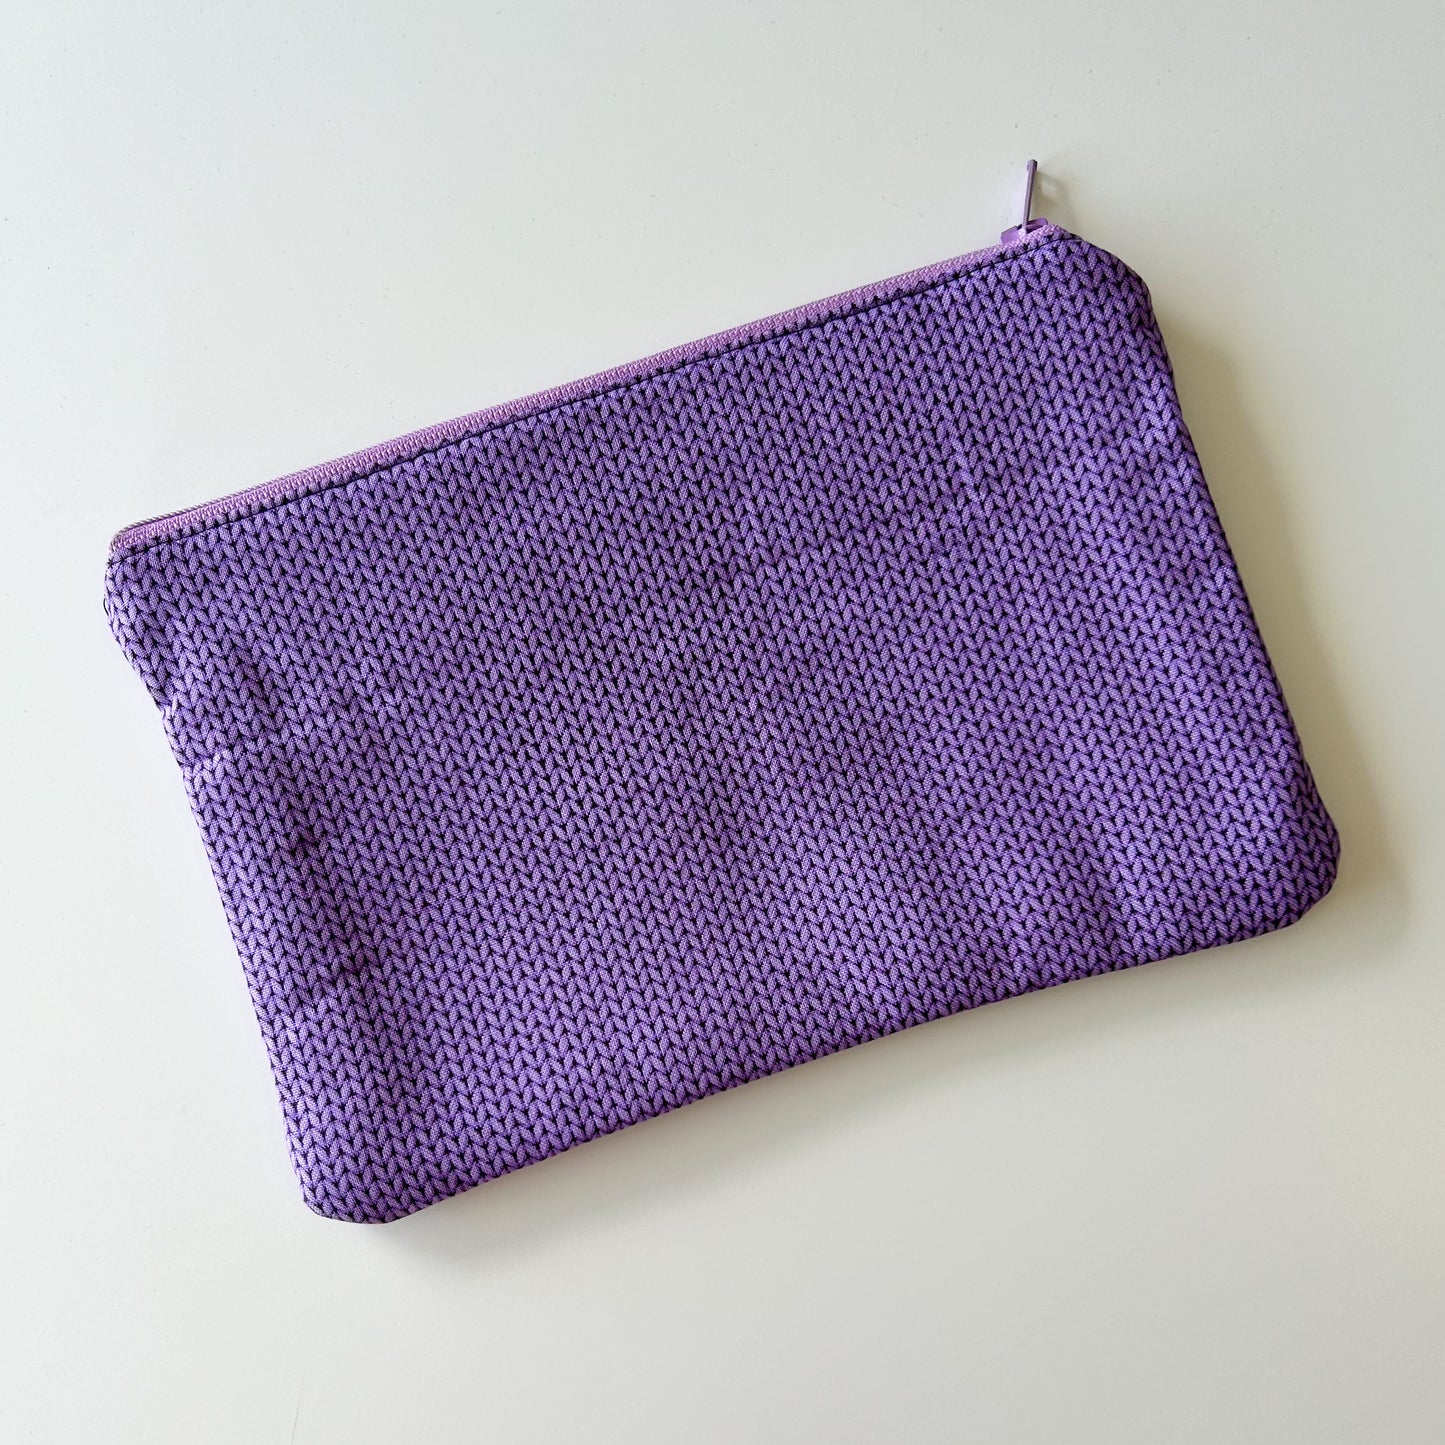 Notion Pouch - Purple Knit Stitch (Copy) (Copy)